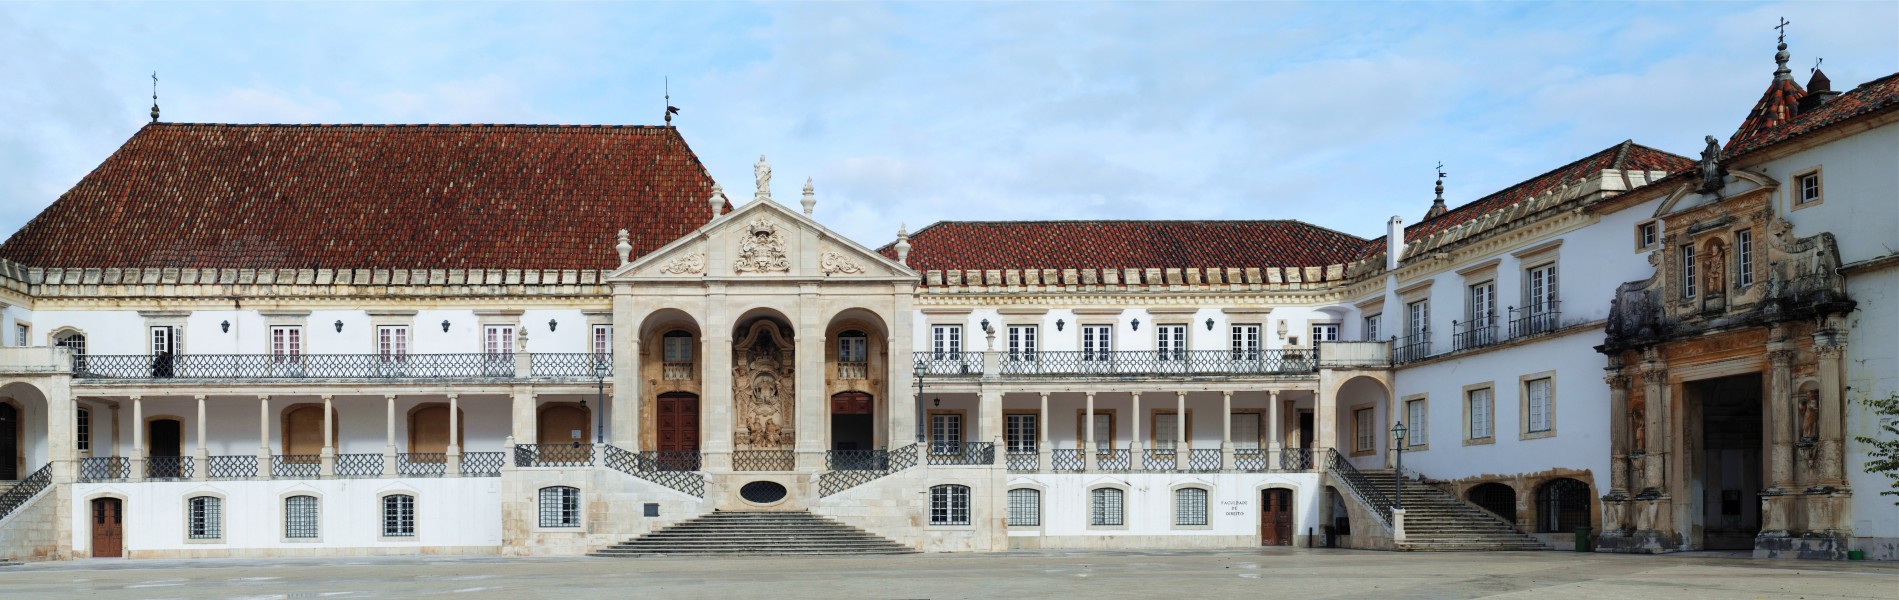 Coimbra December 2011-9